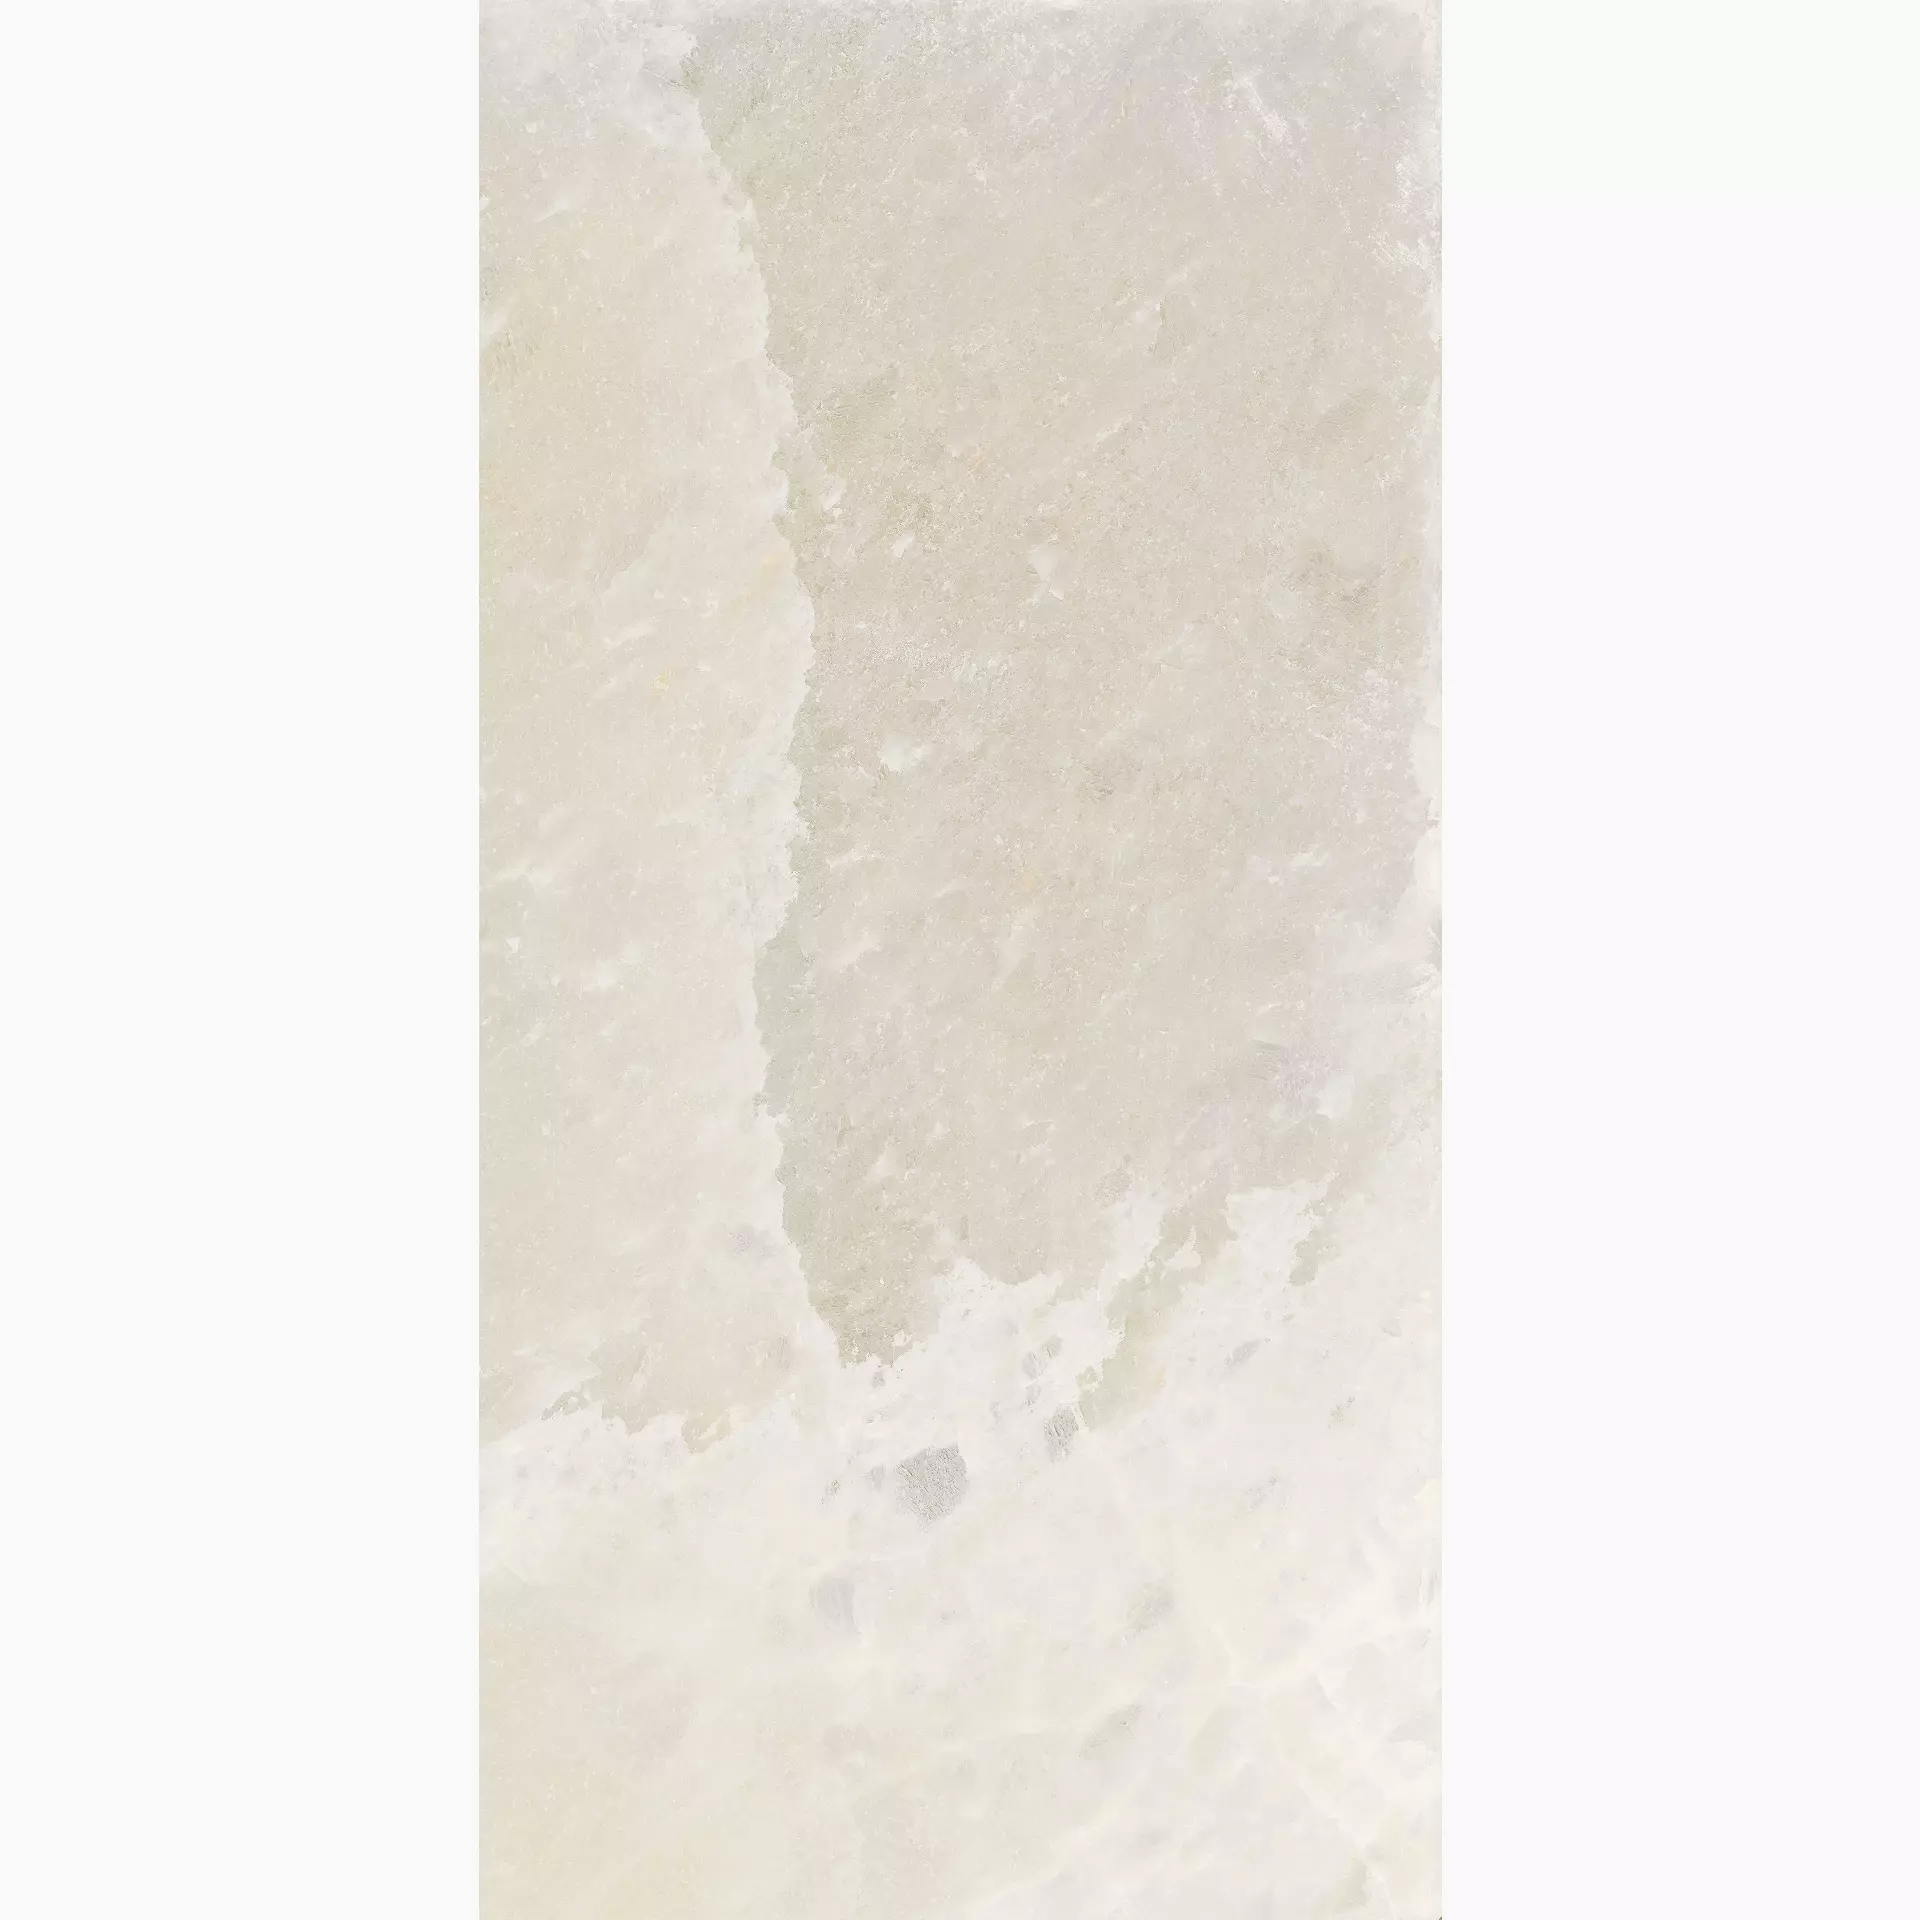 Florim Rock Salt White Gold Naturale – Matt White Gold 765849 matt natur 60x120cm rektifiziert 9mm